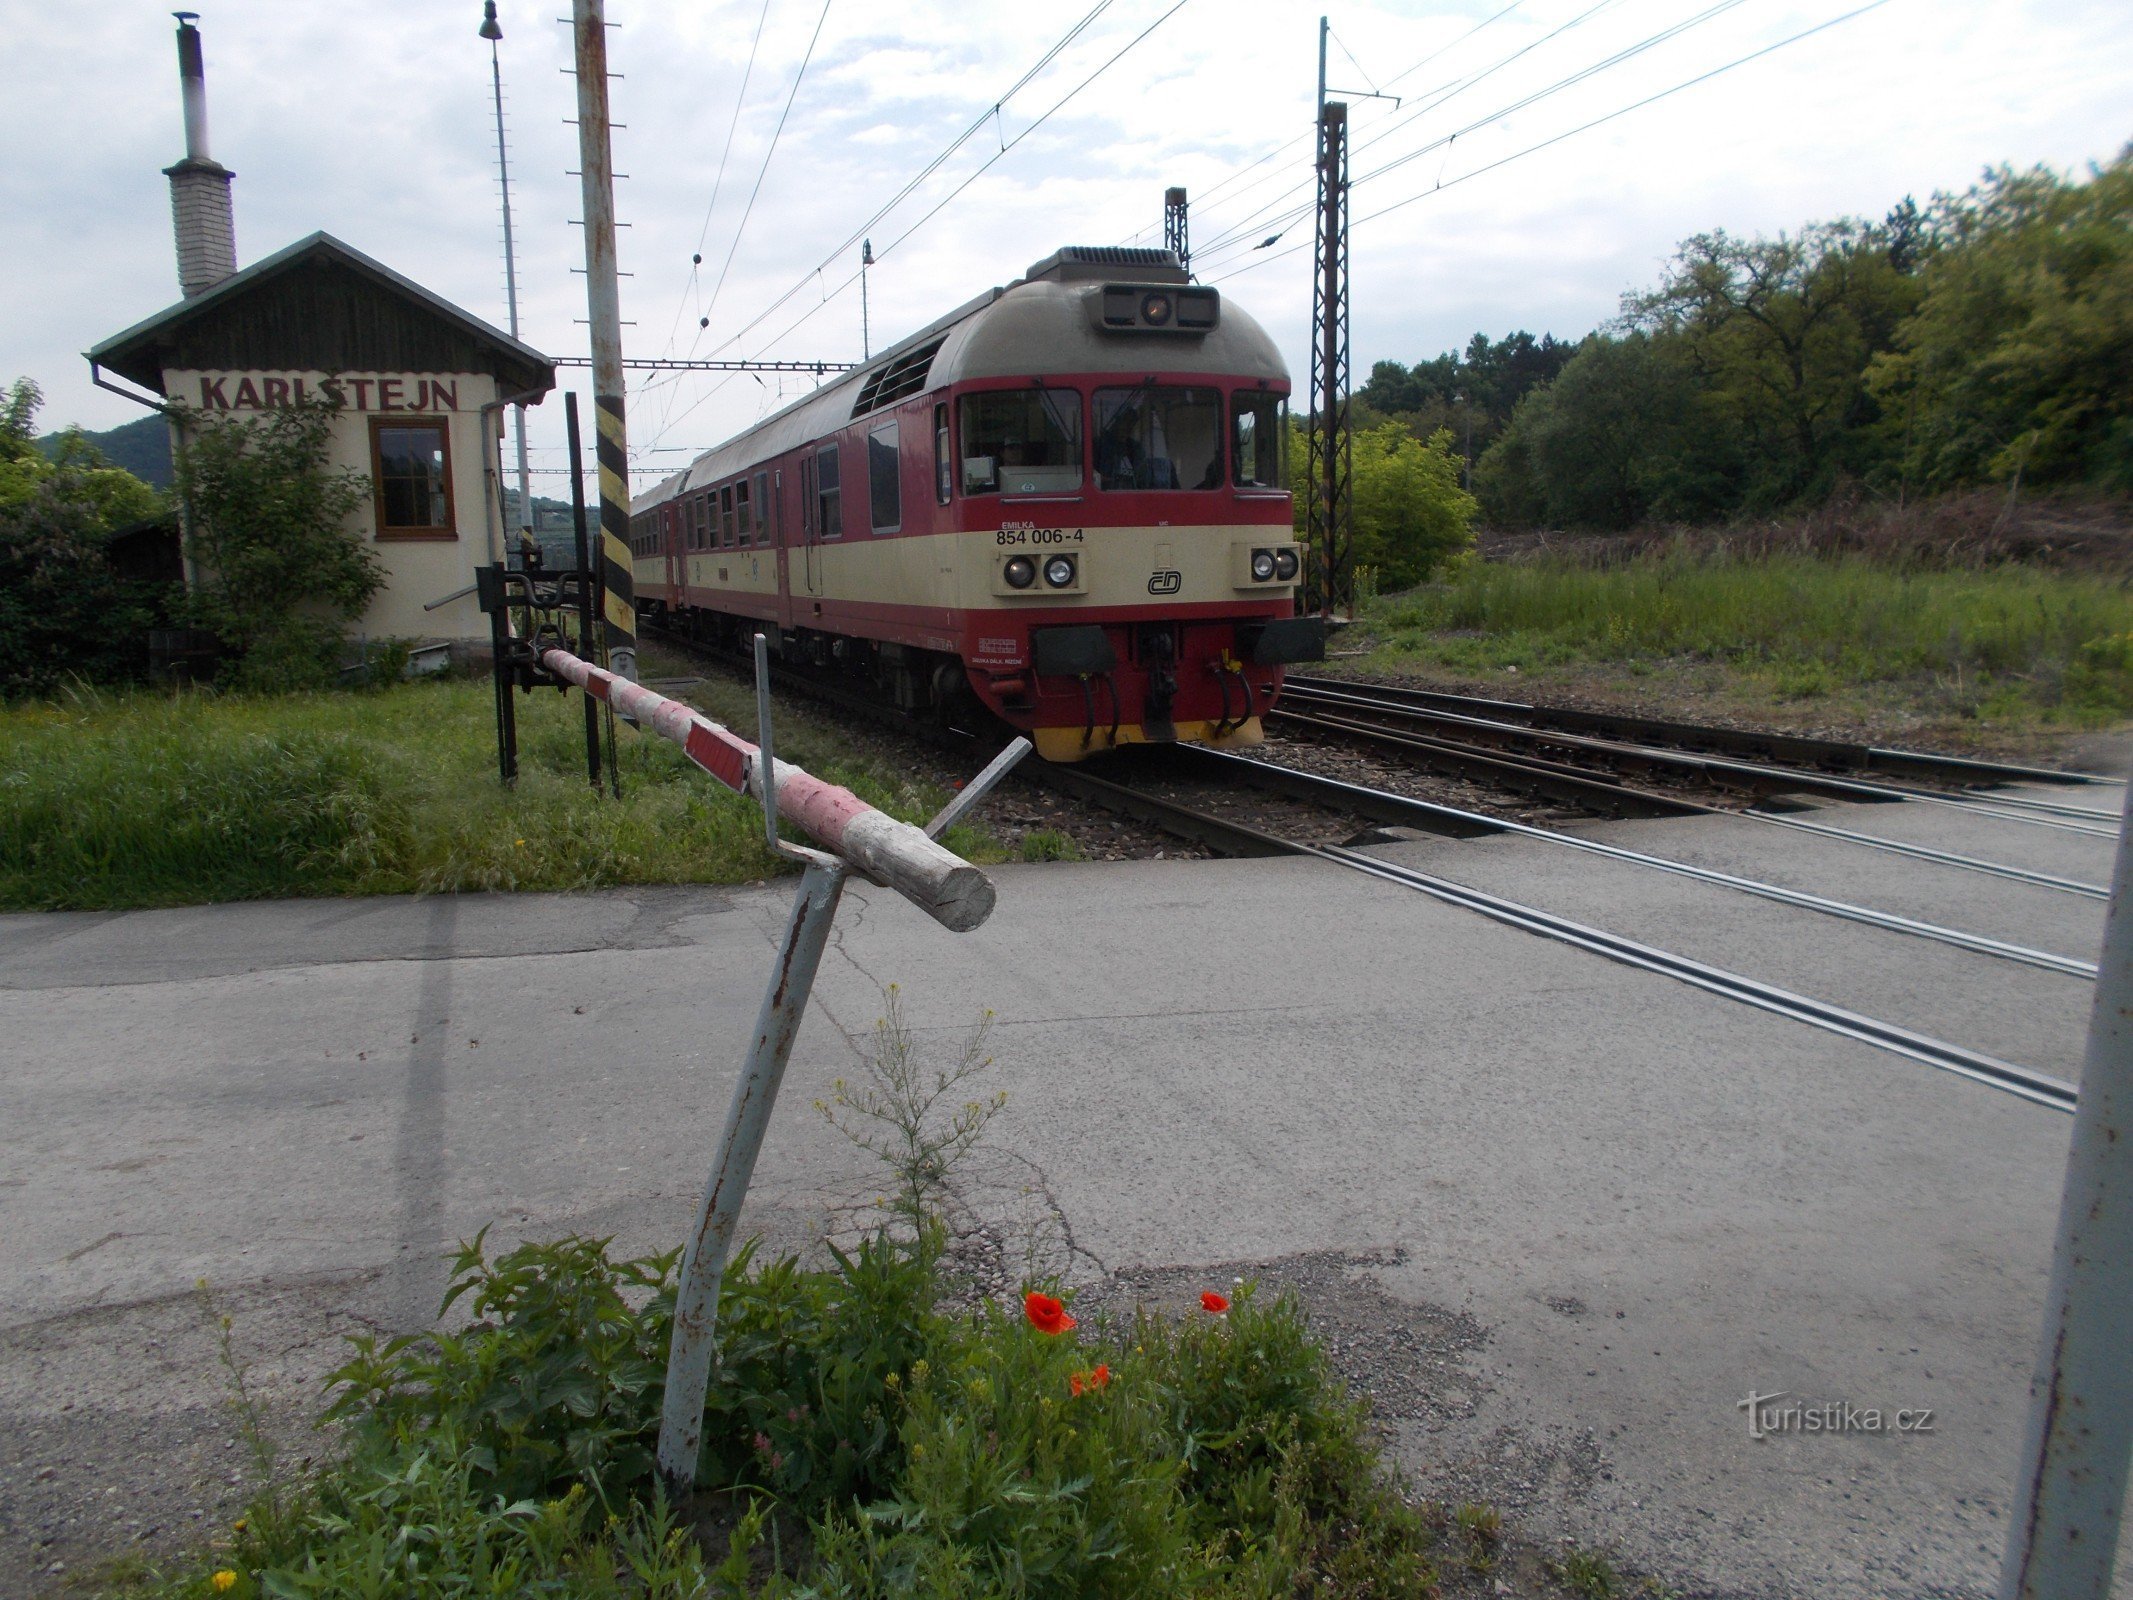 Механические барьеры в Карлштейне и поезд в Бероун.